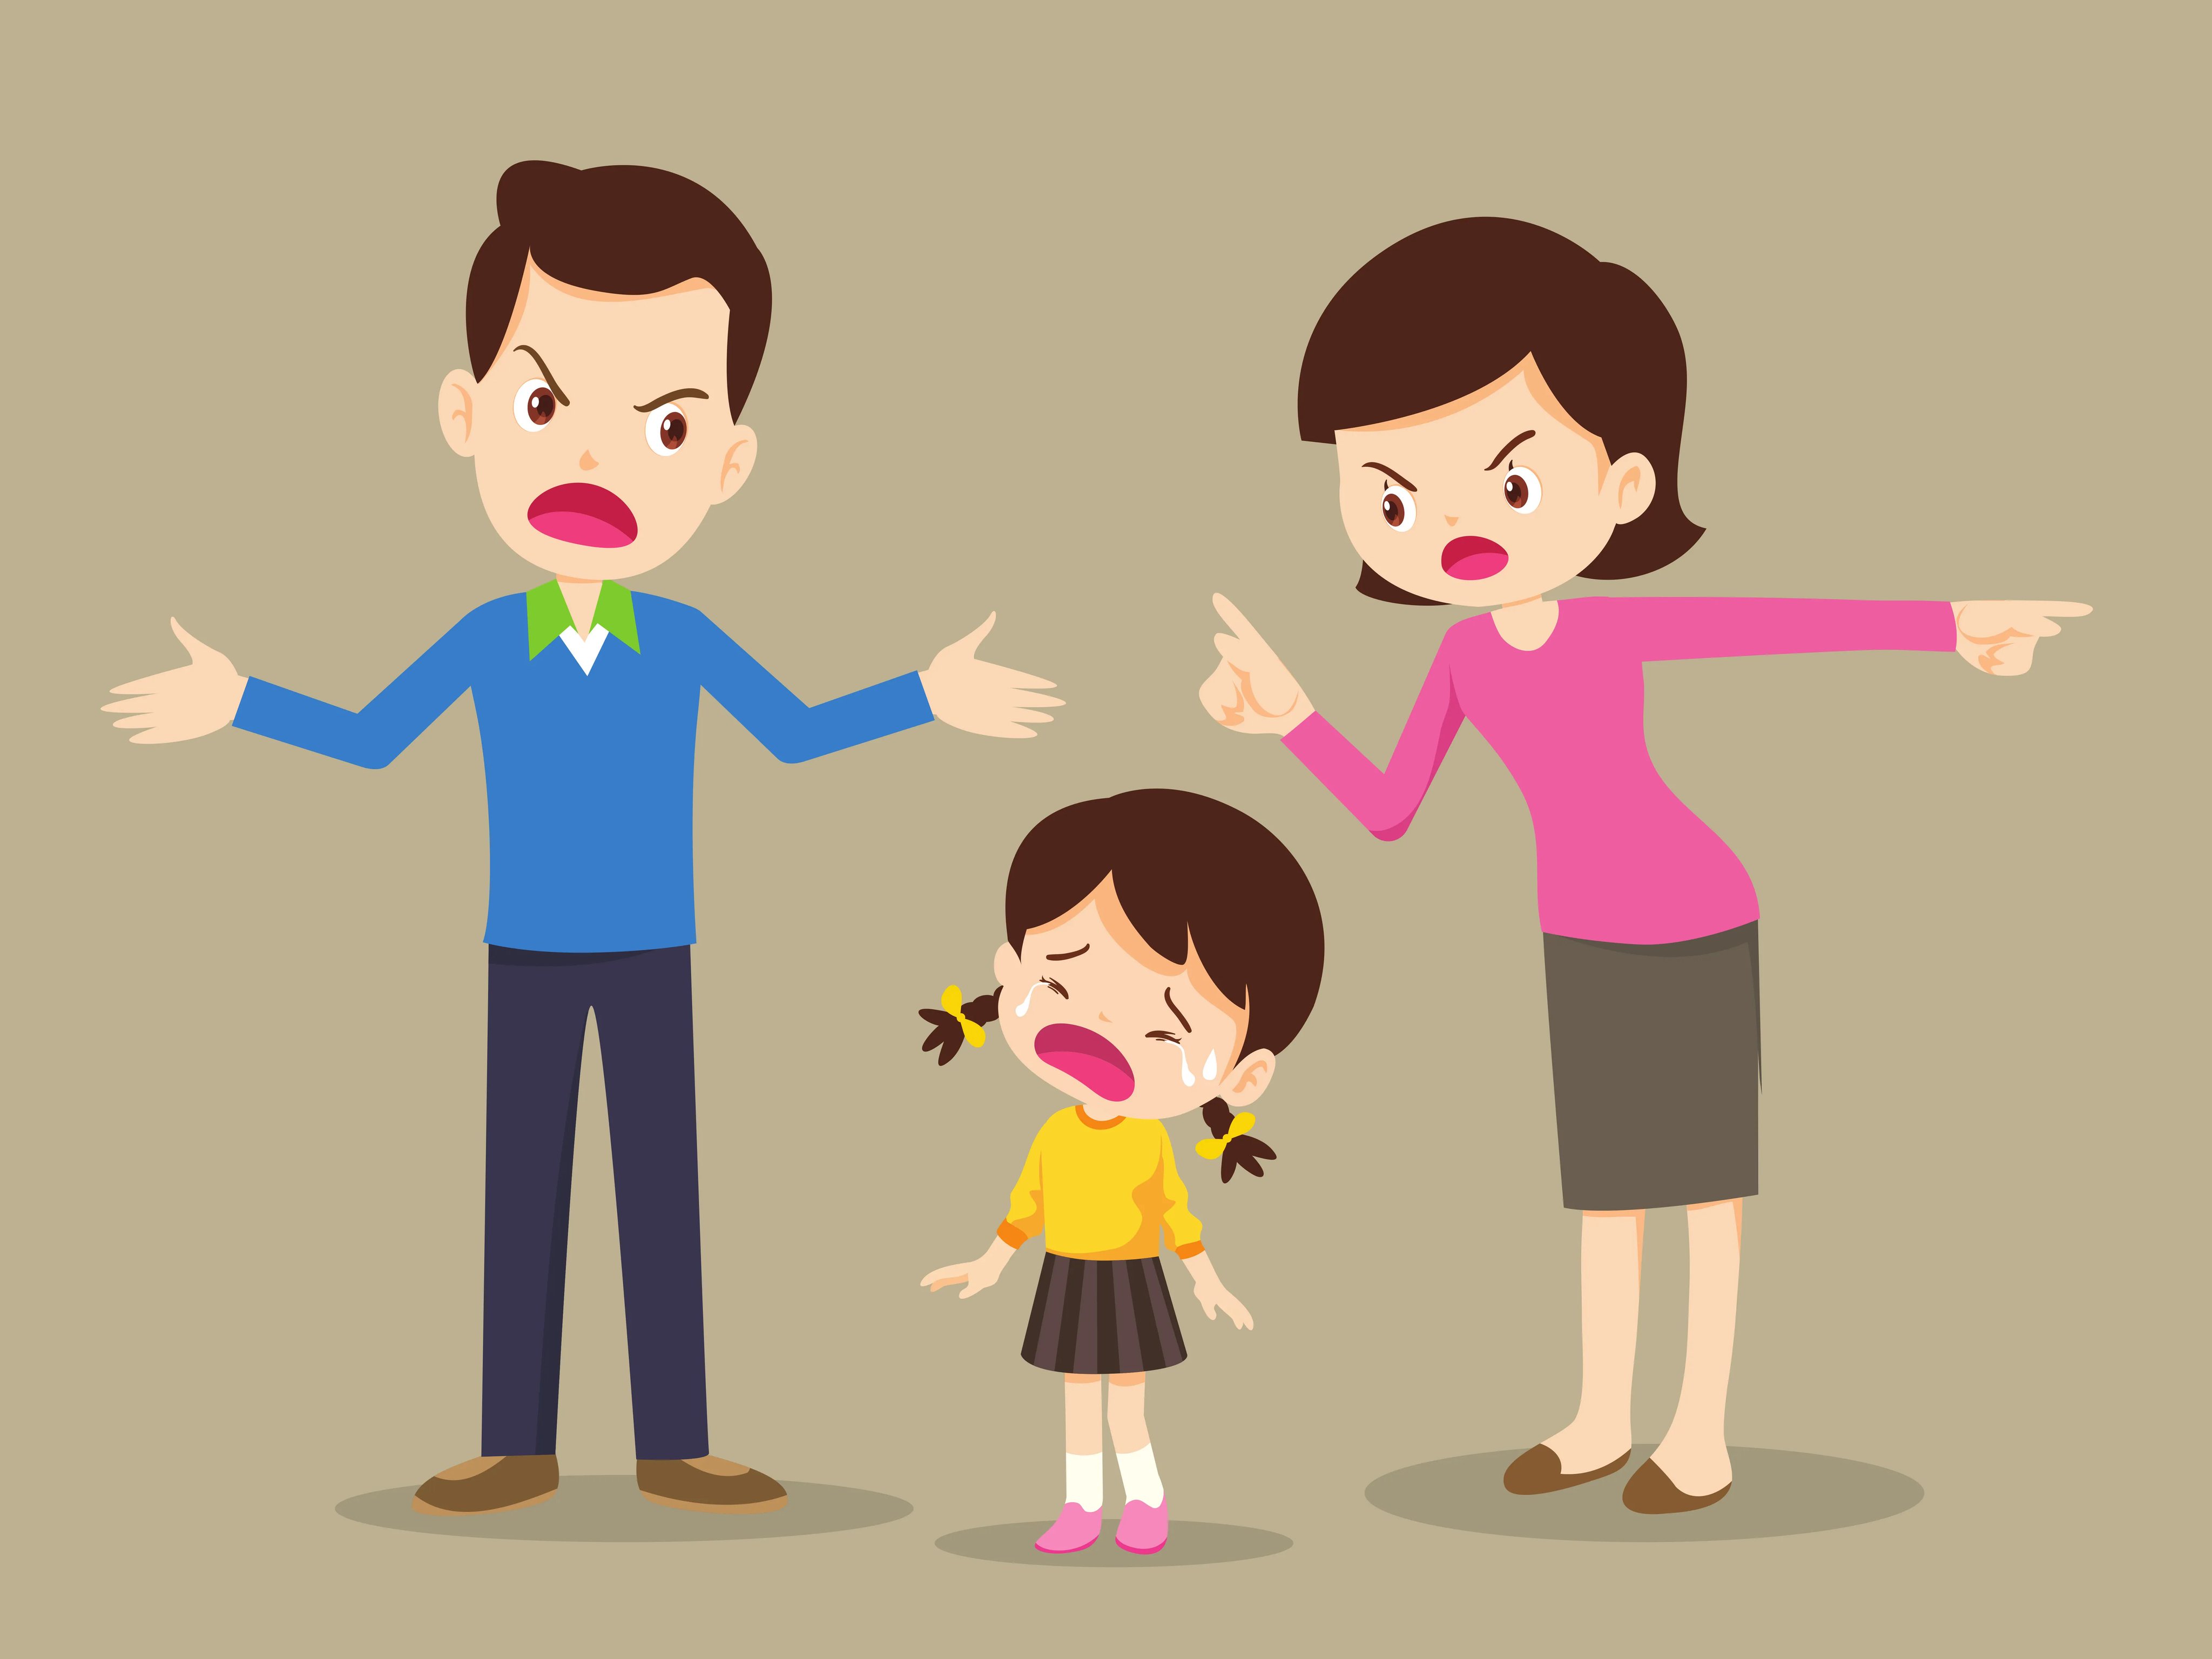 Иллюстрации конфликтов в семье между детьми и родителями